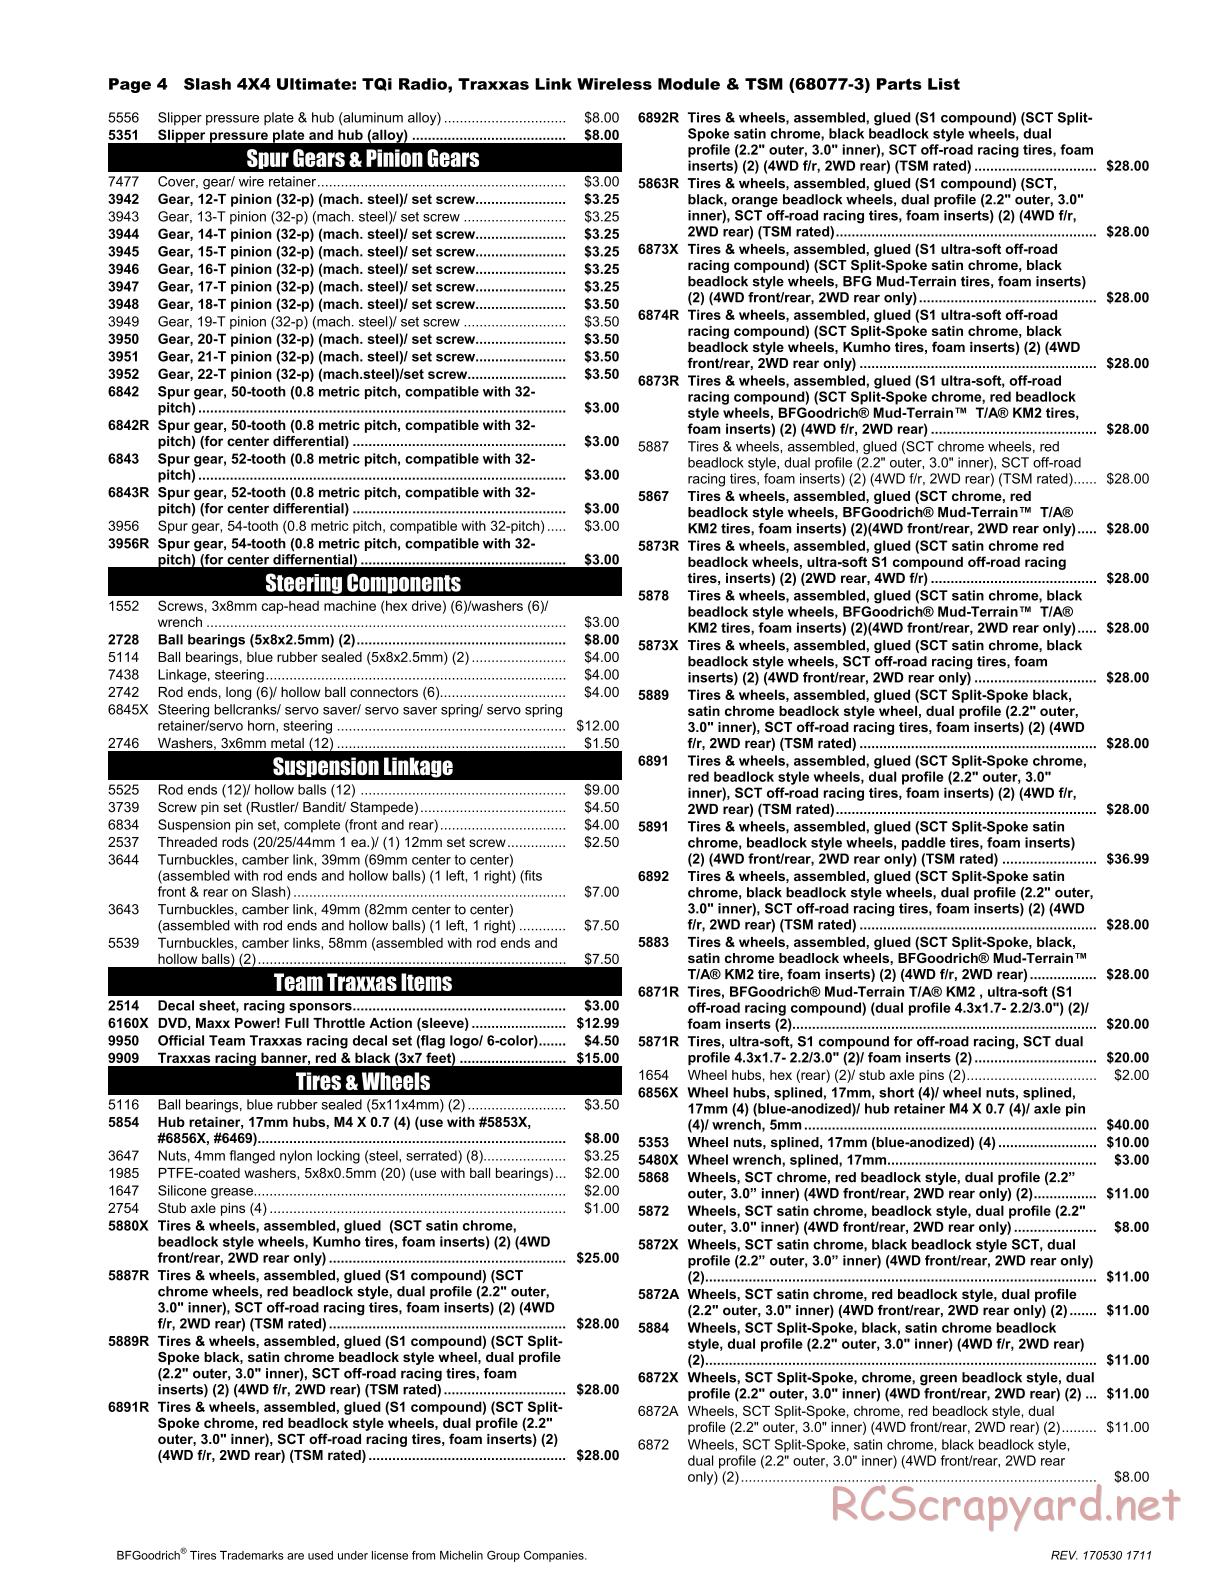 Traxxas - Slash 4x4 Ultimate TSM (2016) - Parts List - Page 4